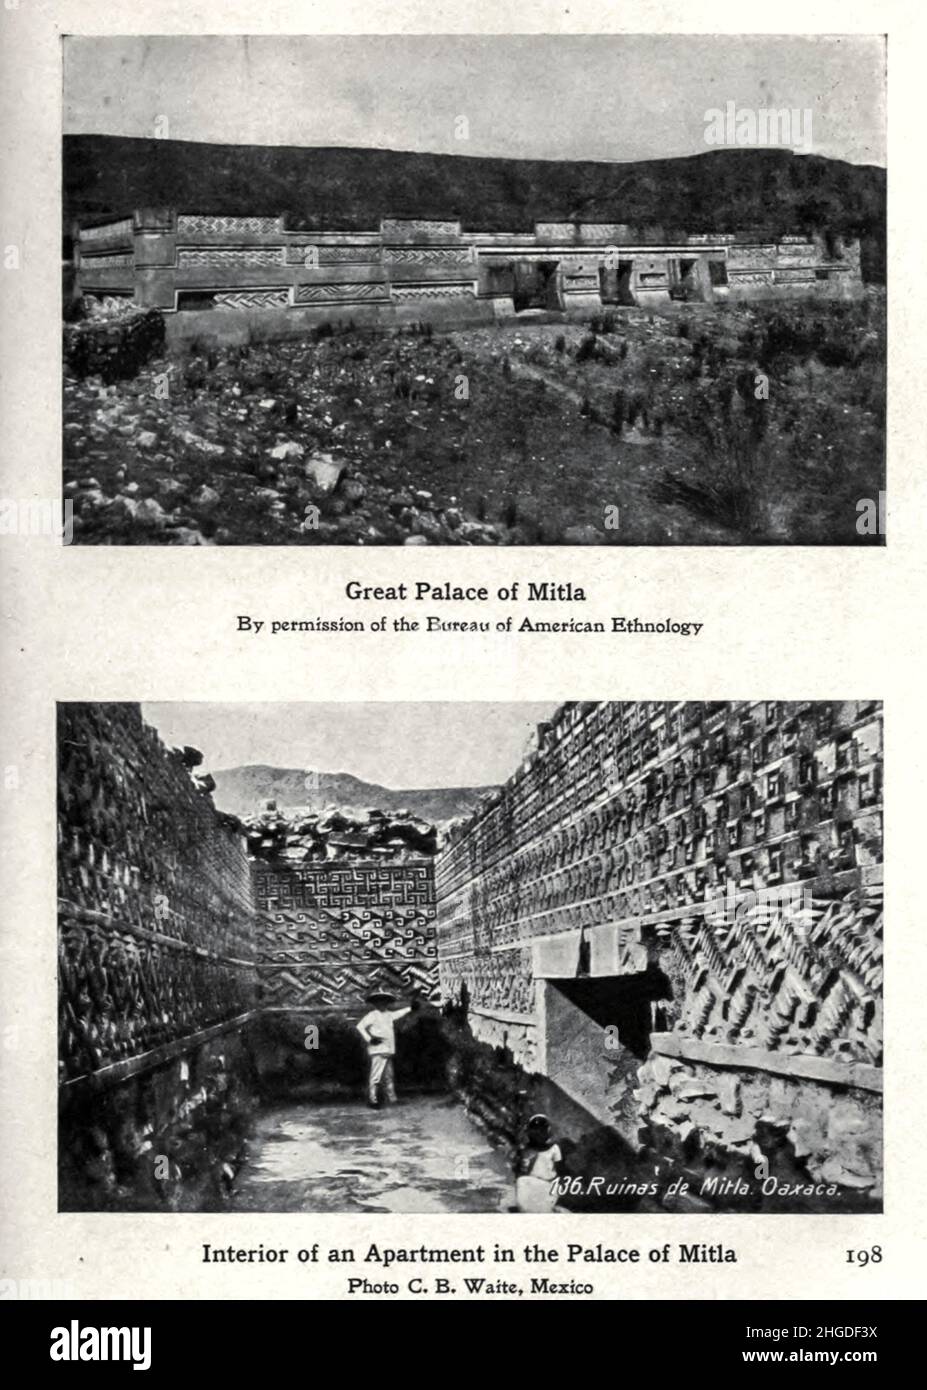 Großer Palast von Mitla aus dem Buch "Myths and Legends Mexico and Peru" von Lewis Spence, Verlag Boston: David D. Nickerson 1913 Stockfoto